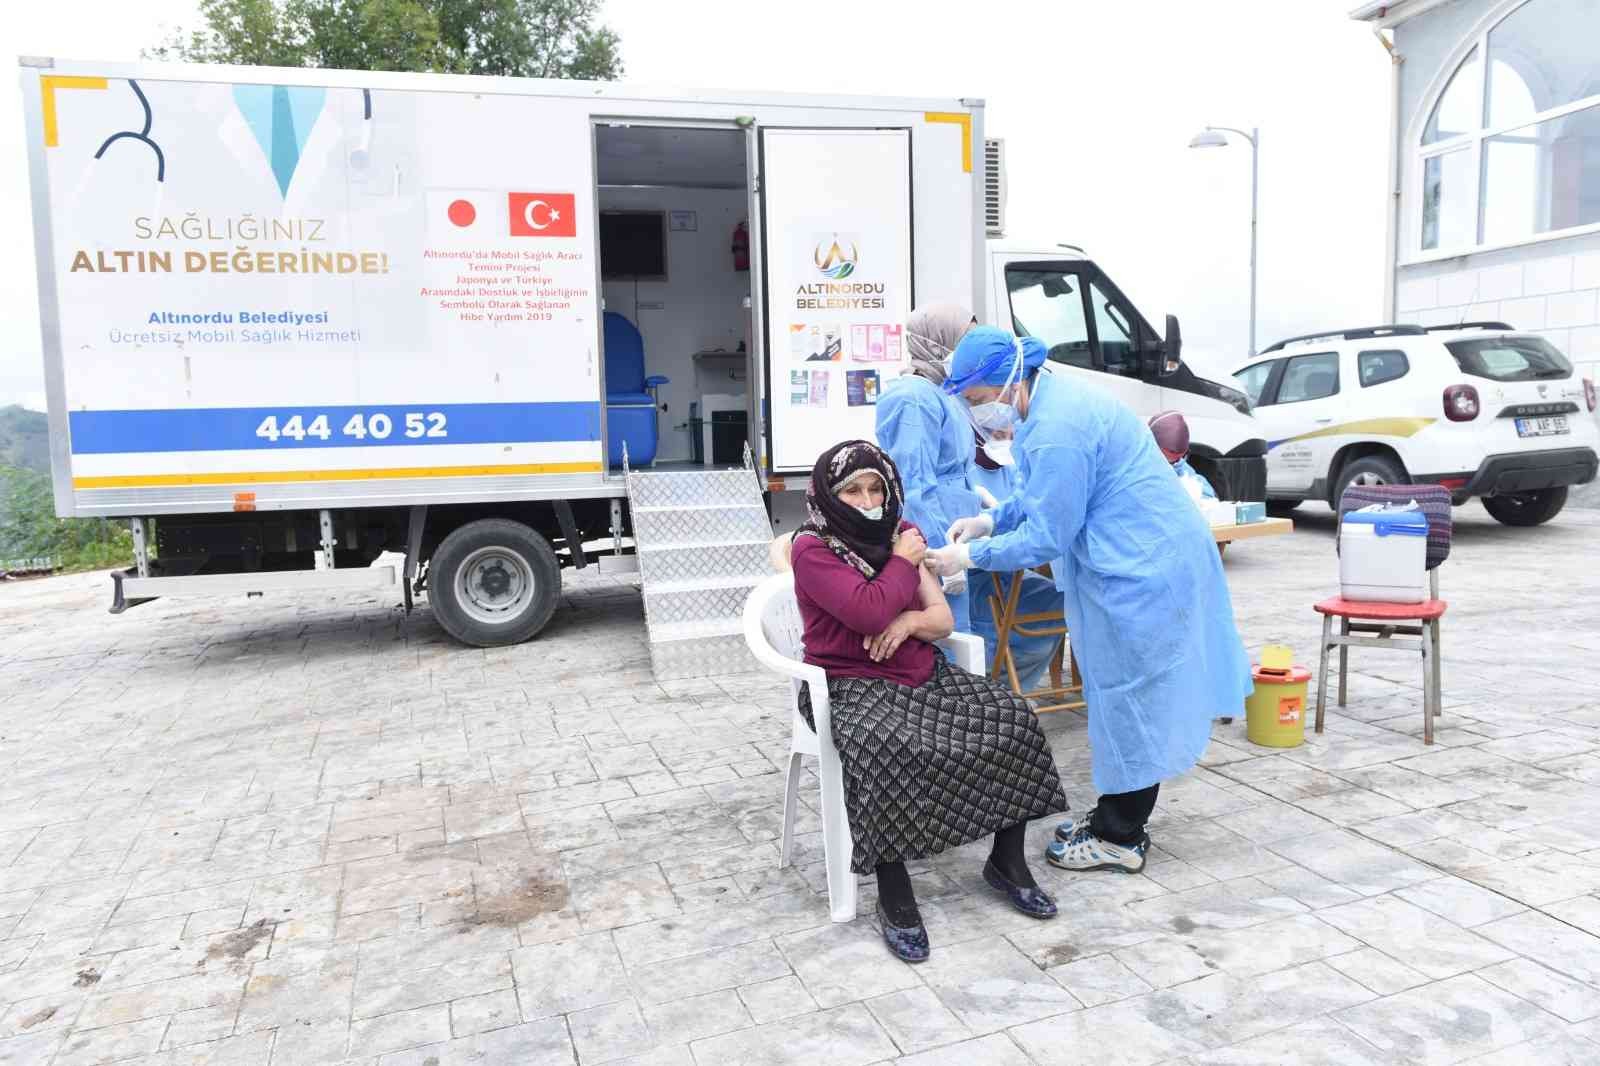 Altınordu’da mobil sağlık tarama aracı aşılama için hizmette #ordu